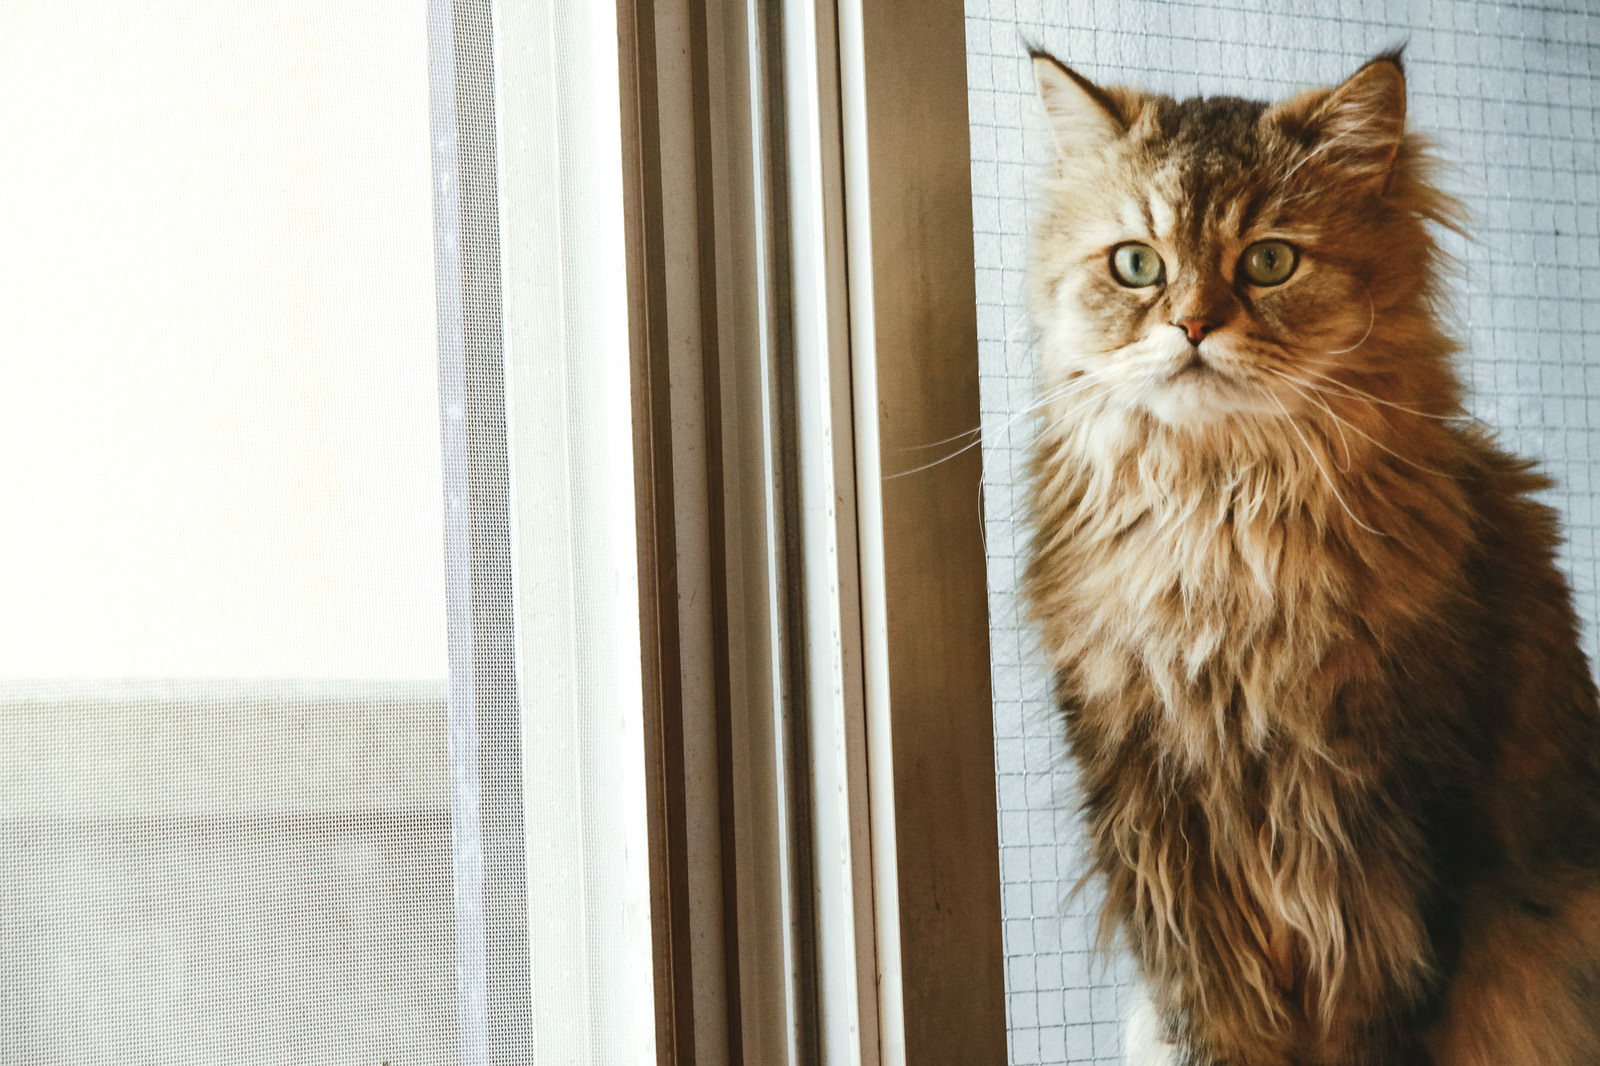 「叱られるのを怖がる猫 | フリー素材のぱくたそ」の写真